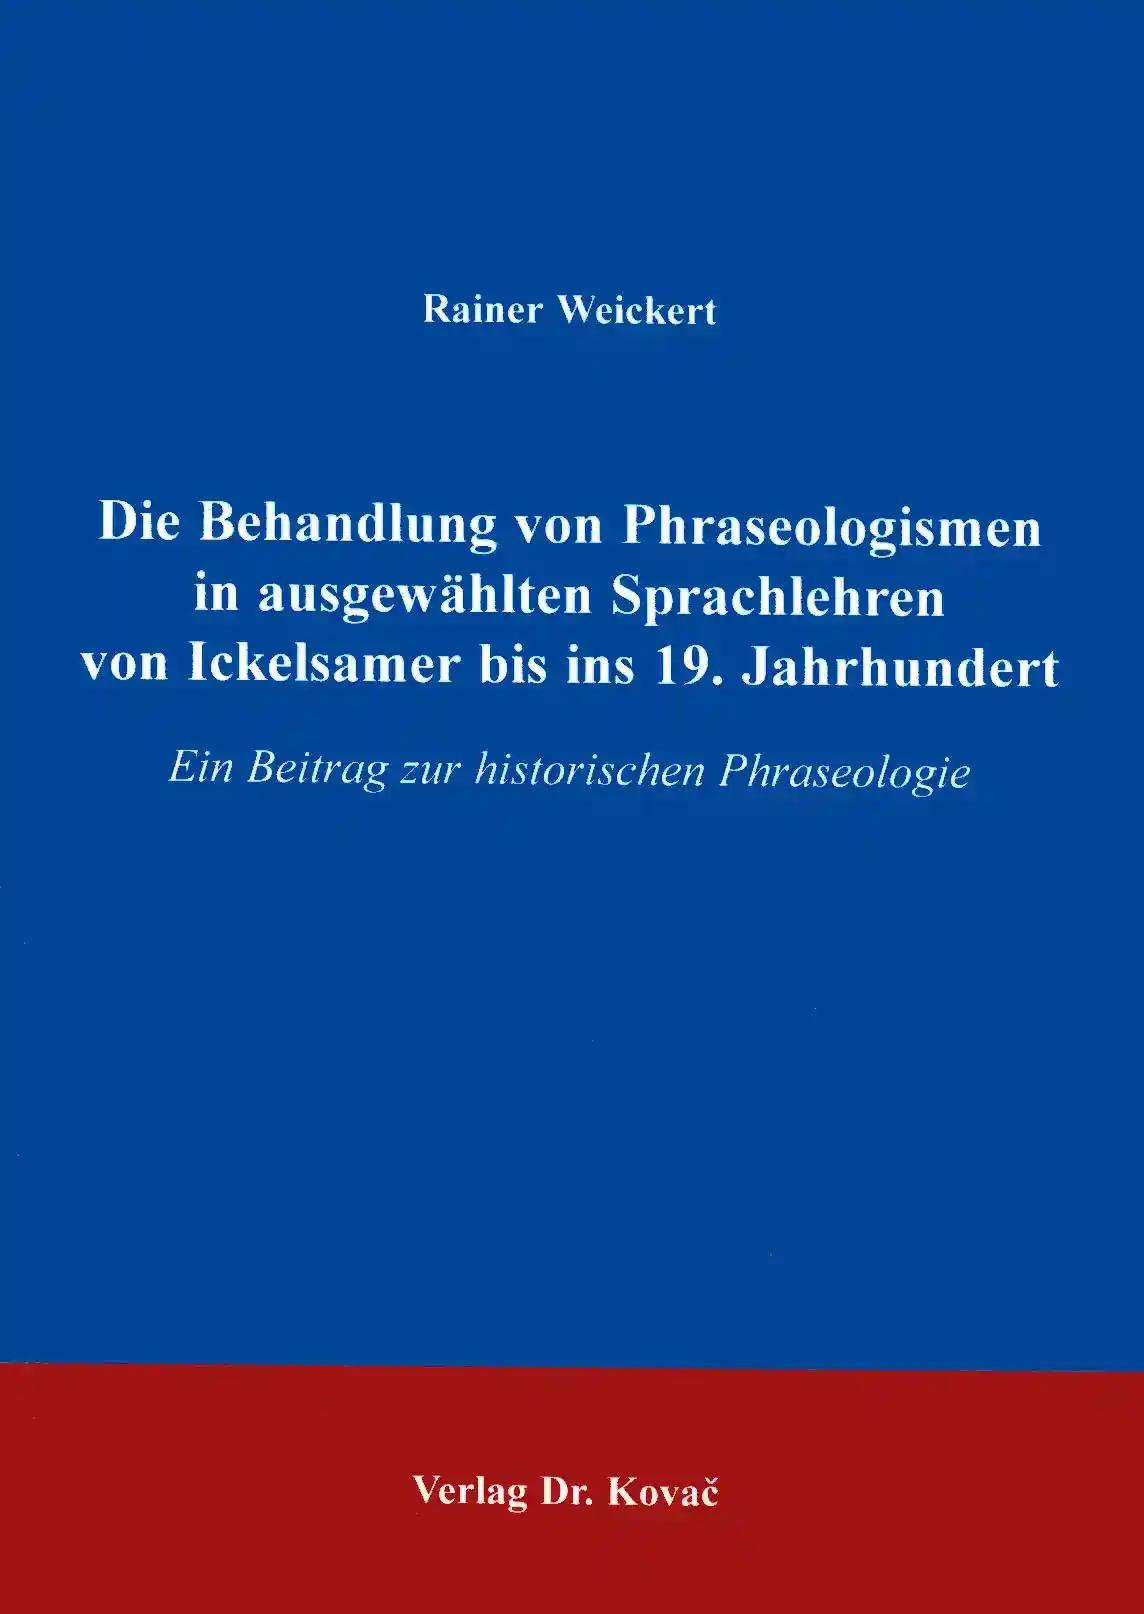 Die Behandlung von Phraseologismen in ausgewählten Sprachlehren von Ickelsamer bis ins 19. Jahrhundert